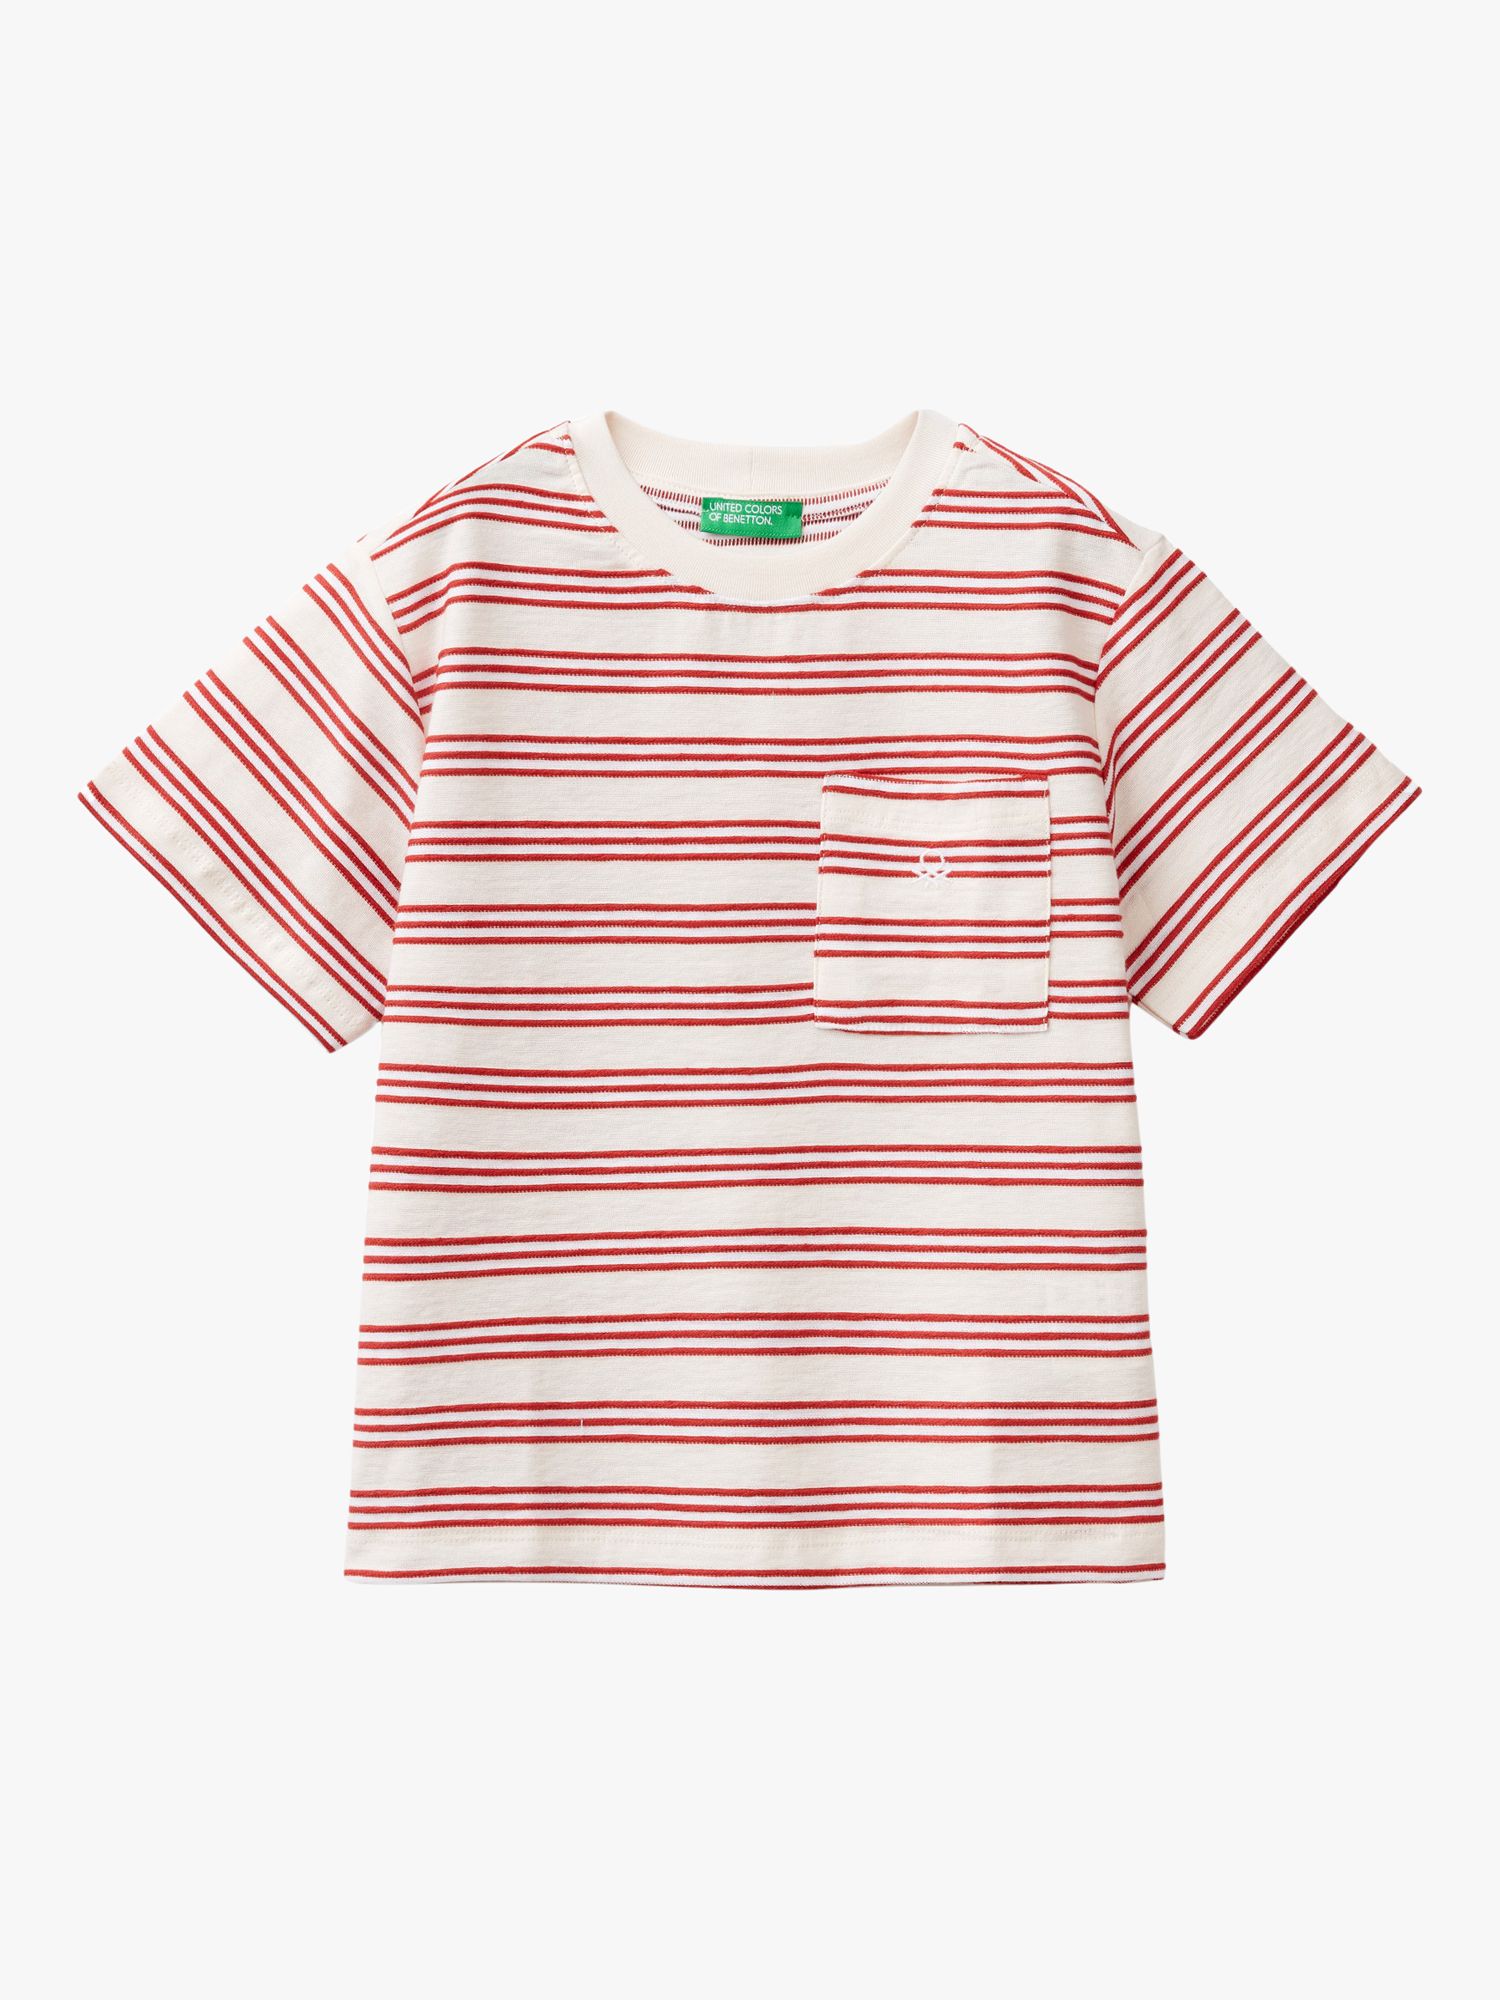 Benetton Kids' Logo Stripe Pocket Detail T-Shirt, Red/Multi, 3-4 years